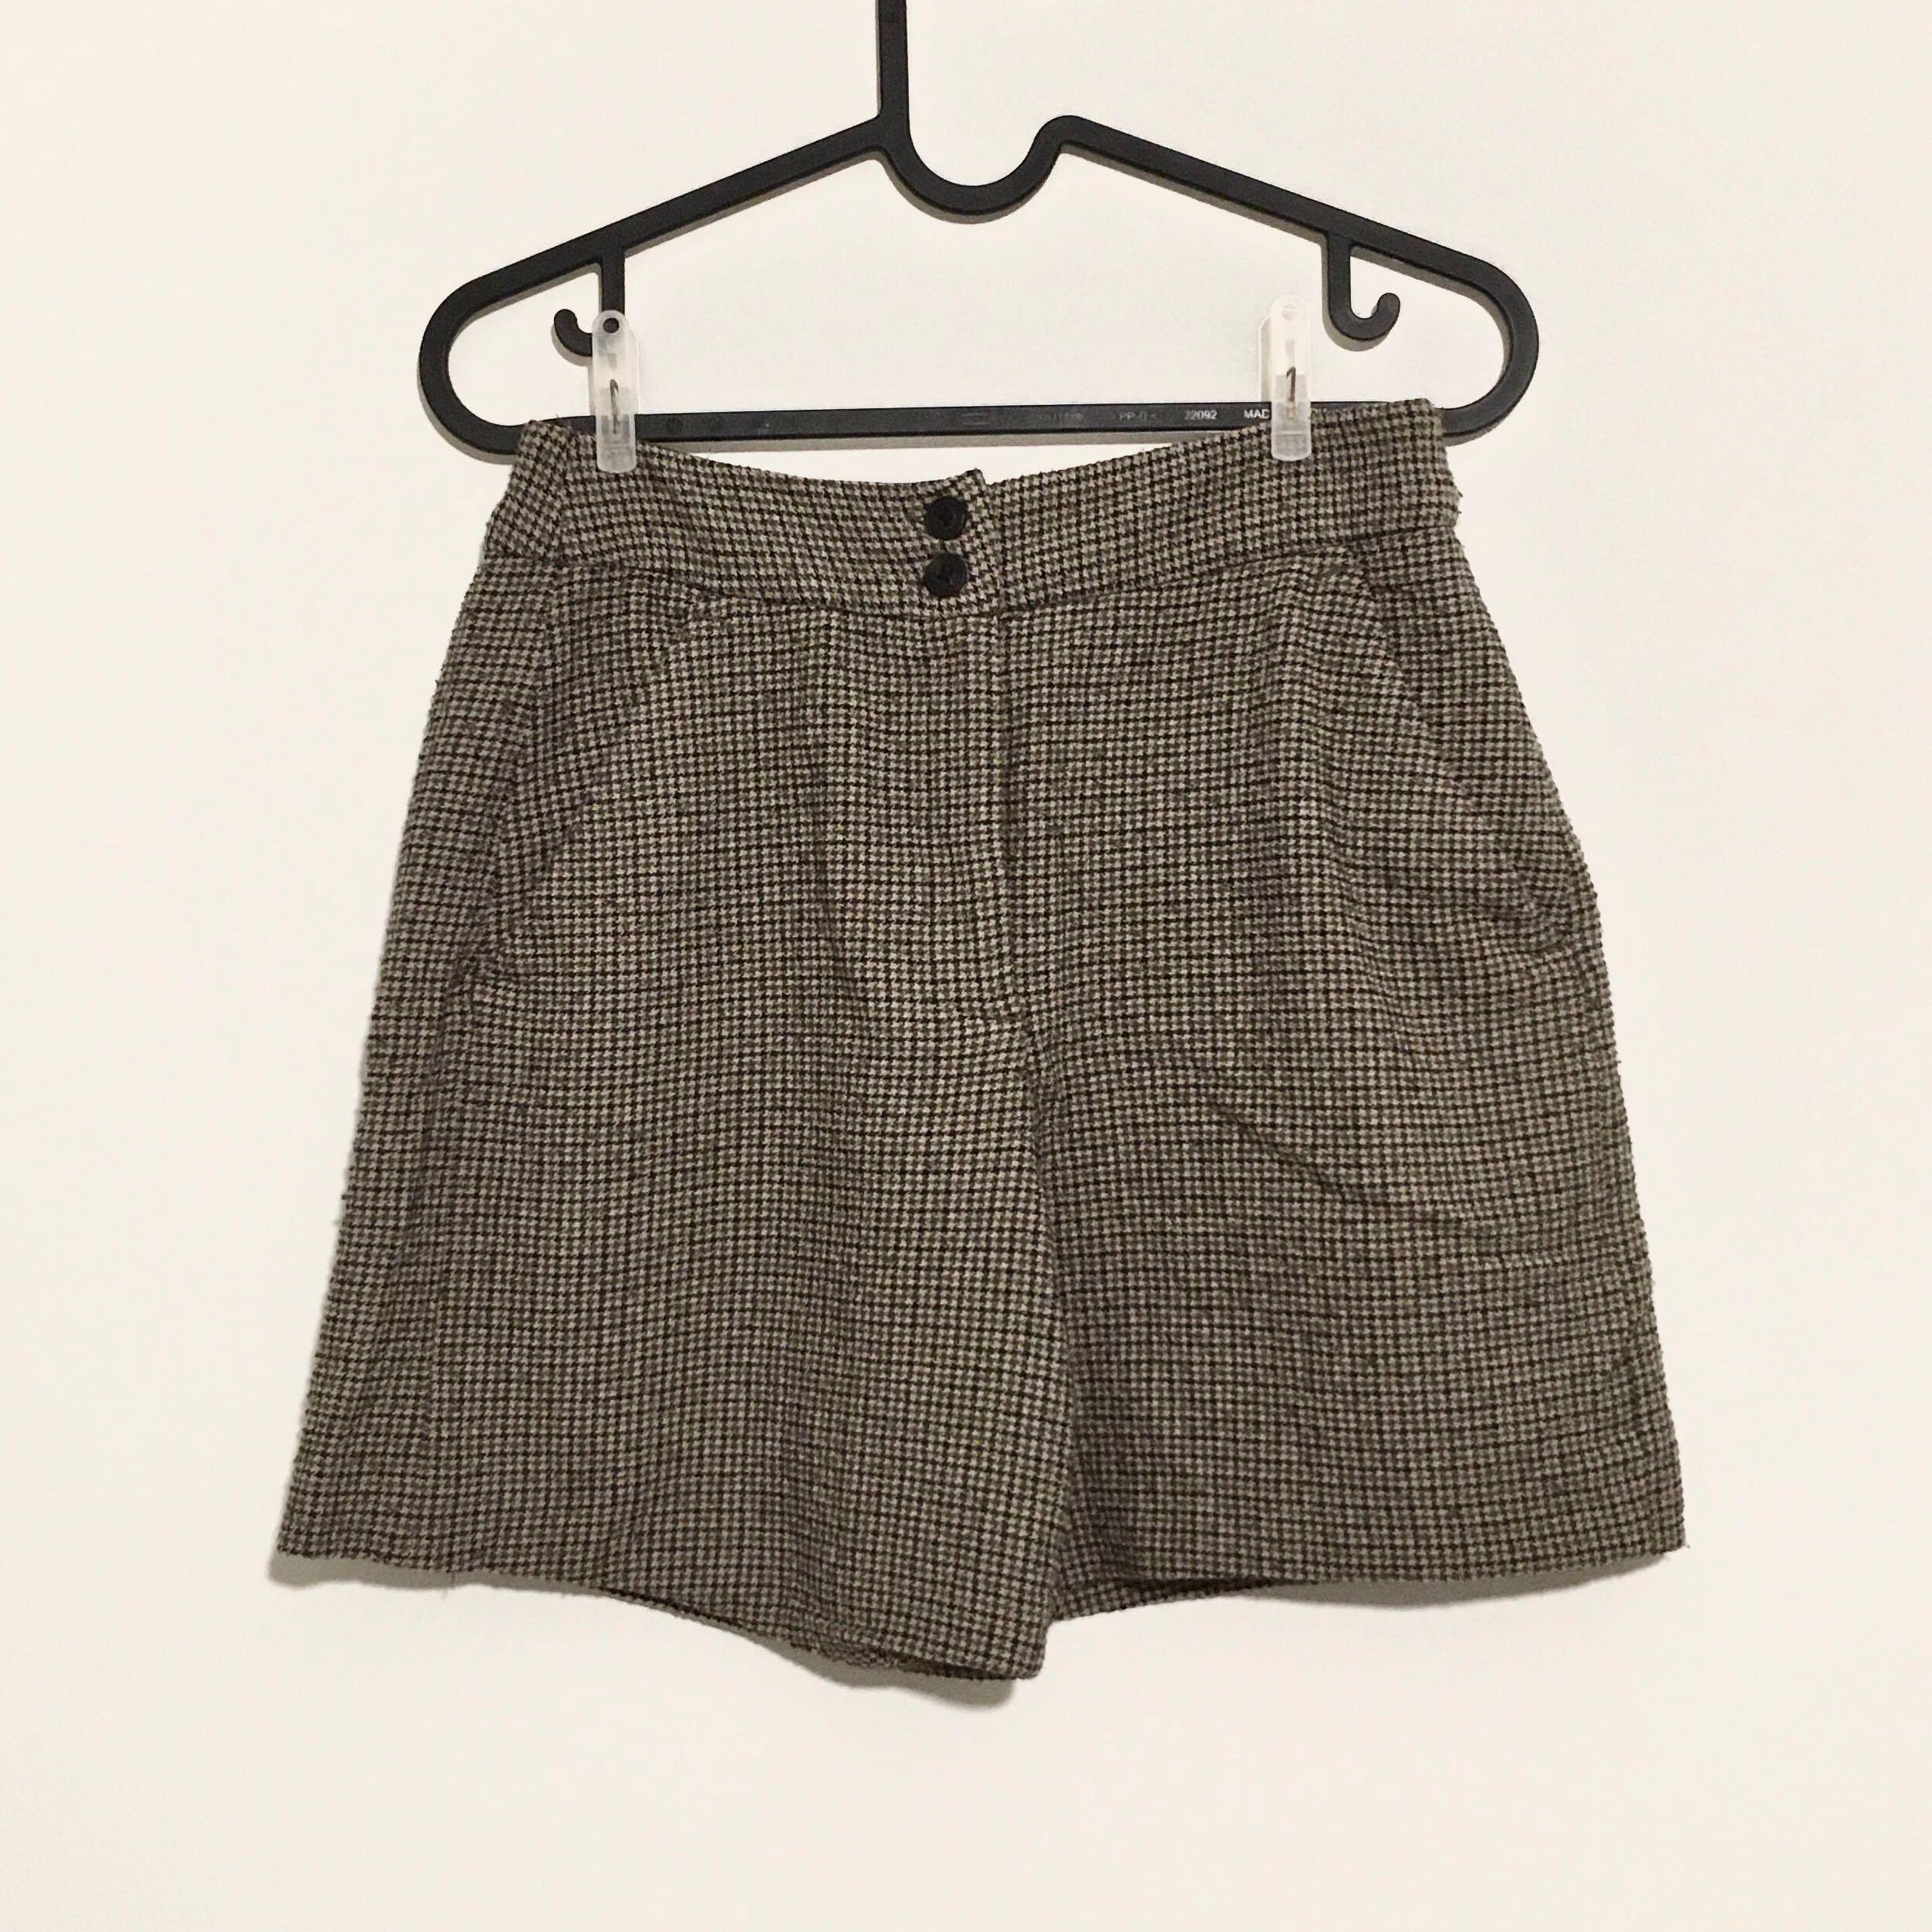 ZARA Checkered Shorts, Women's Fashion 